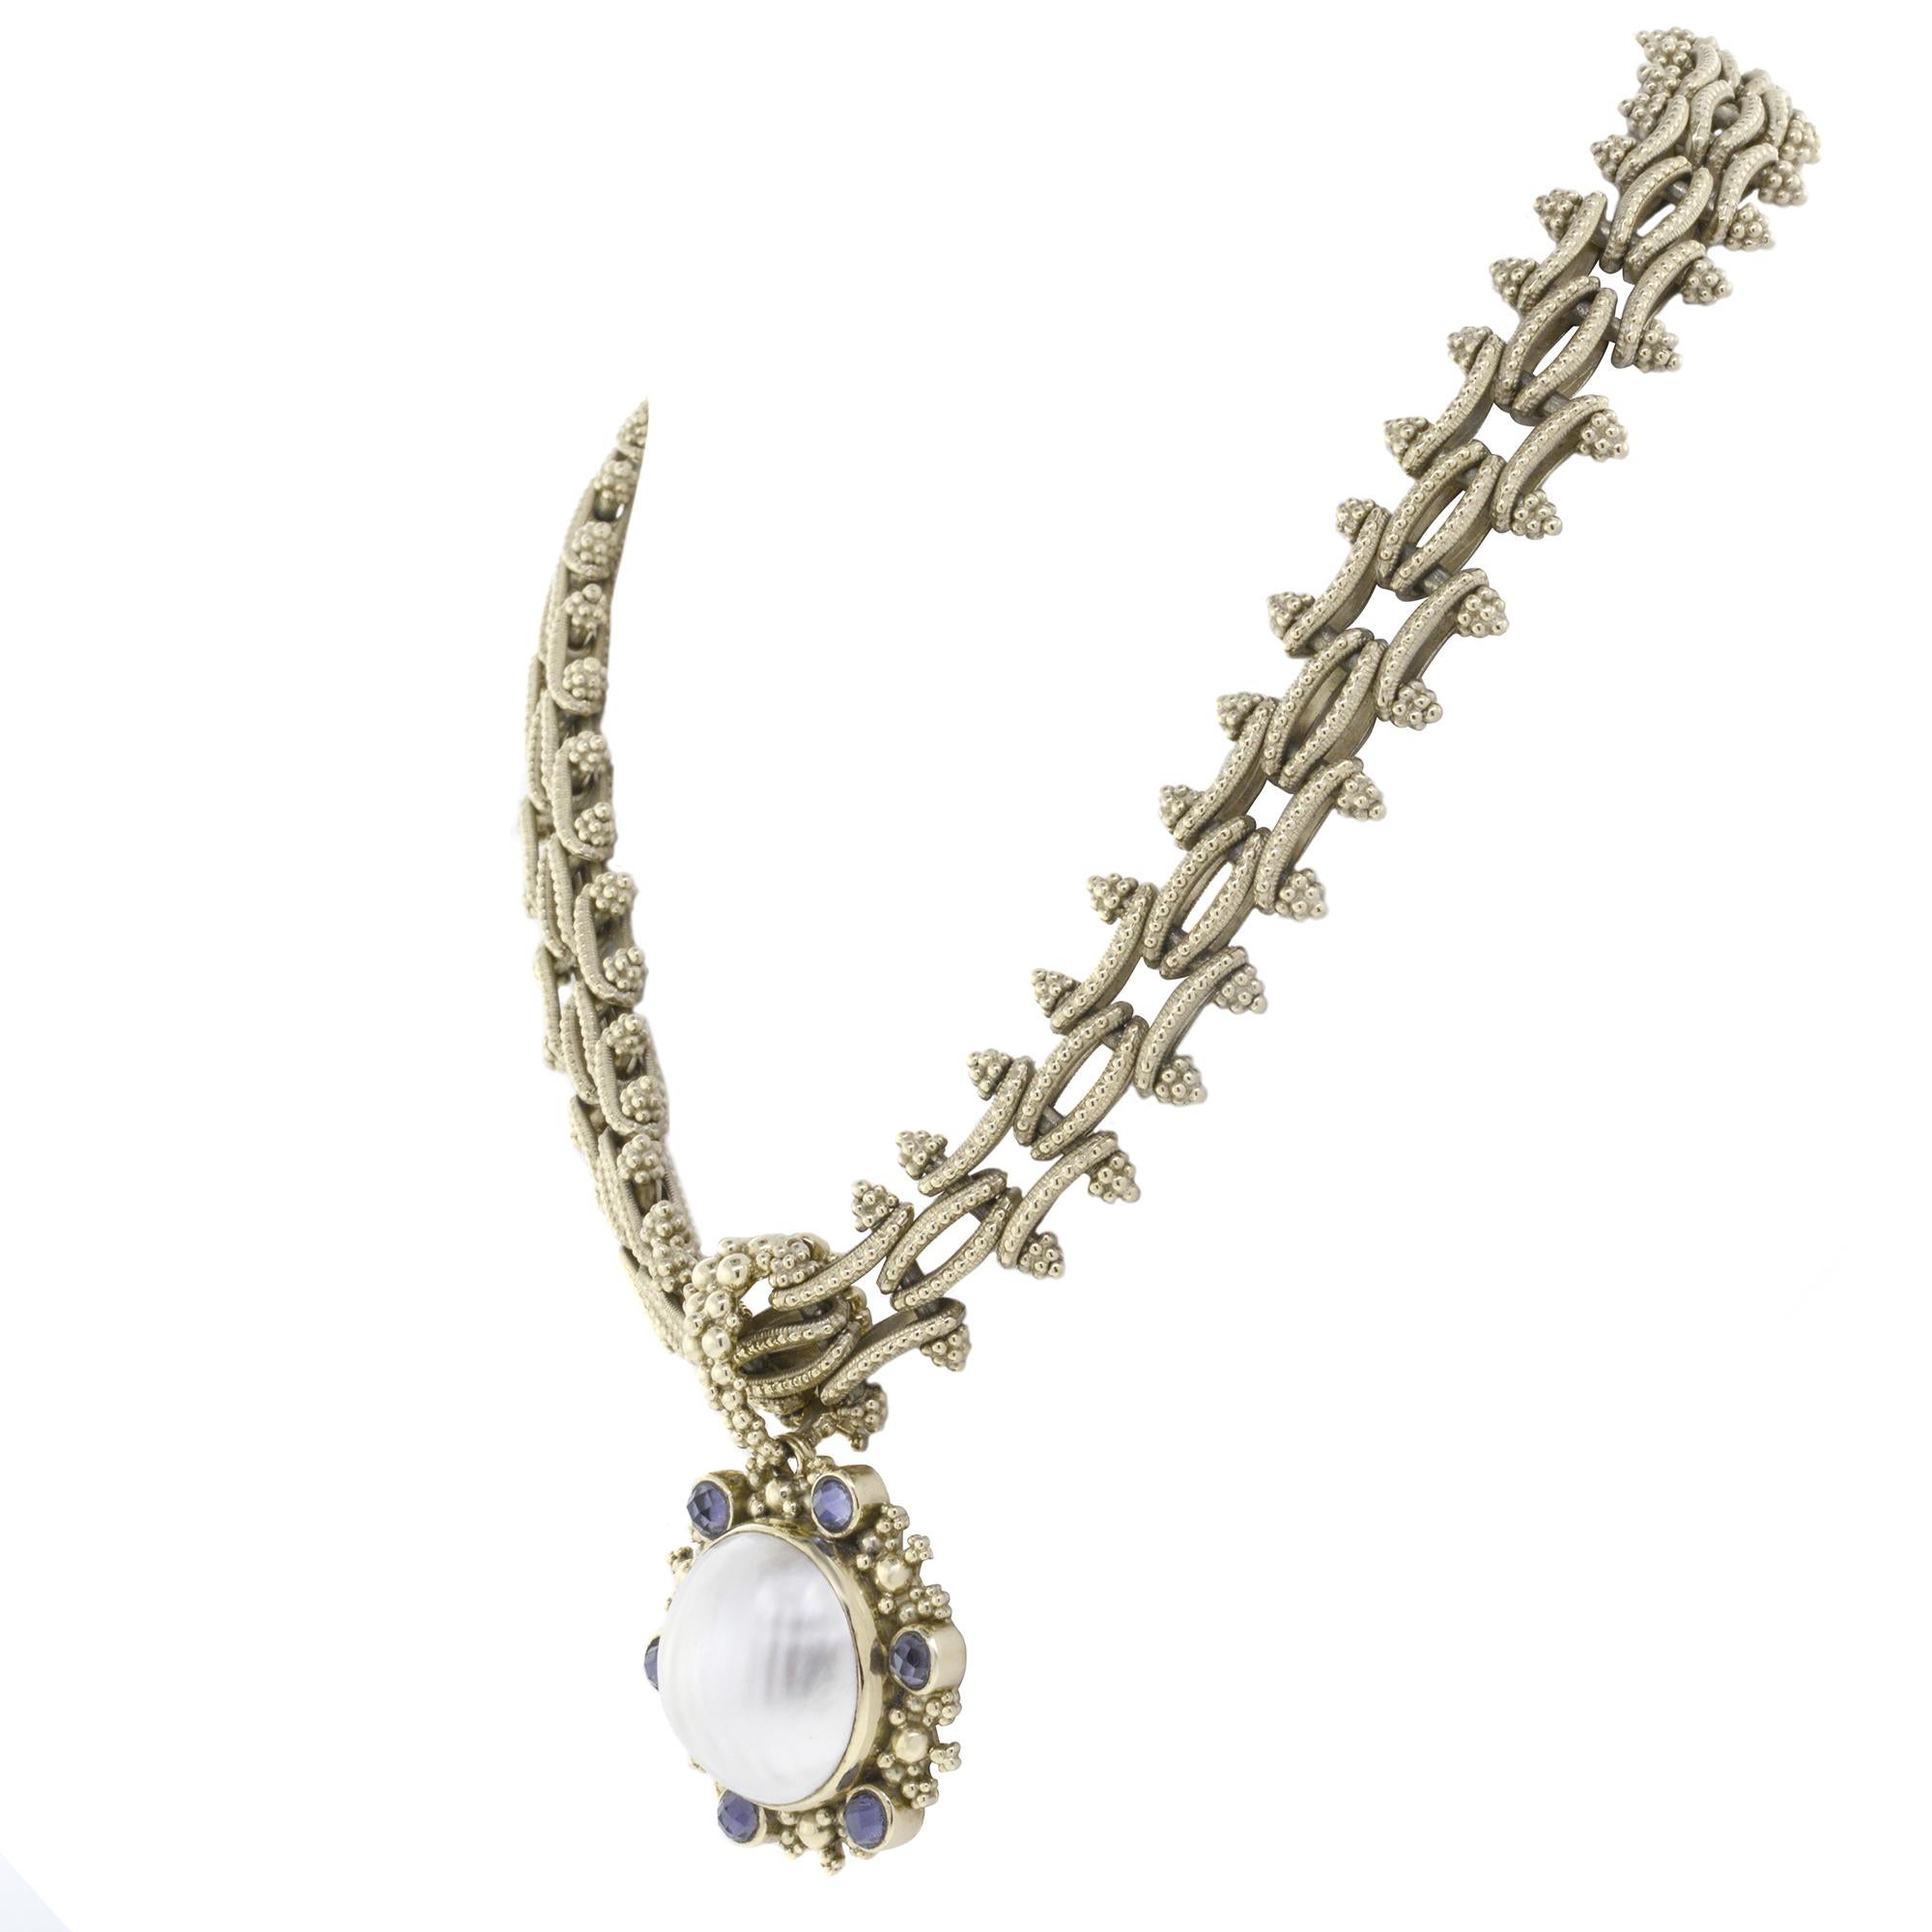 Cette parure 100% authentique Stephen Dweck comprend un collier avec pendentif et une paire de boucles d'oreilles. Elle est livrée dans une boîte cadeau et avec une carte d'évaluation. La parure est en or jaune 18 carats avec un cabochon de nacre